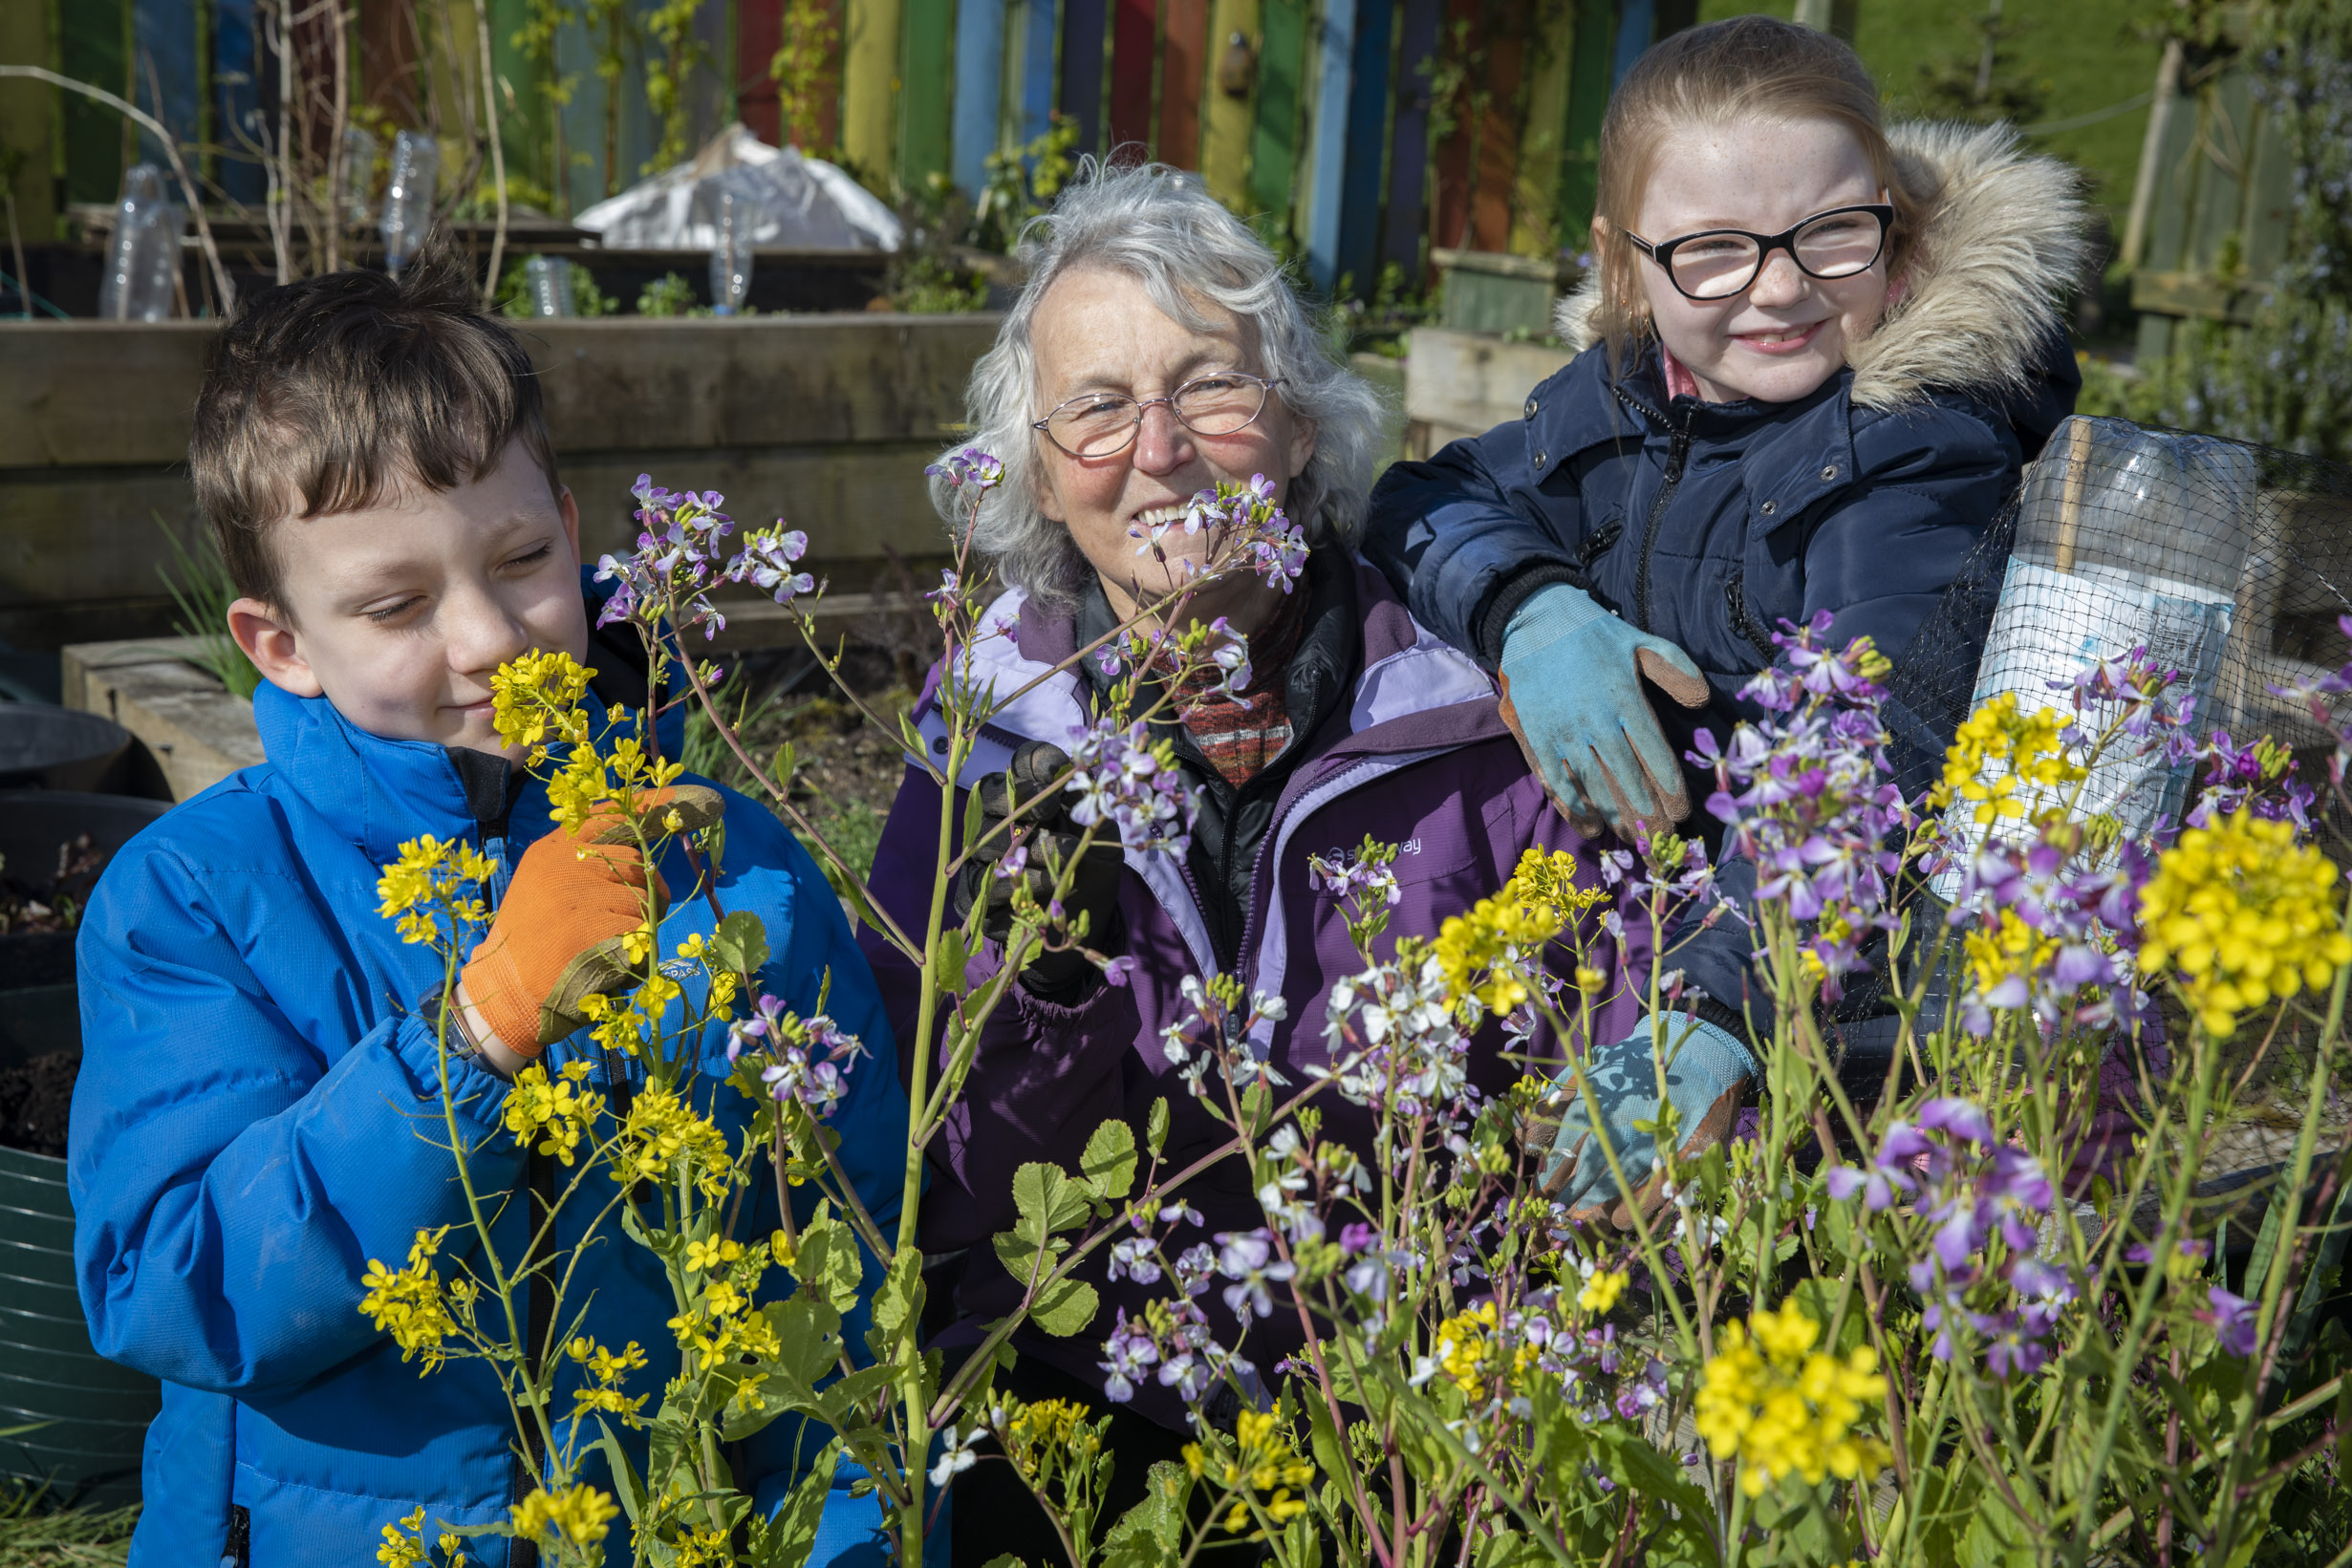 TV bushcraft star and award-winning gardeners on the joy of volunteering